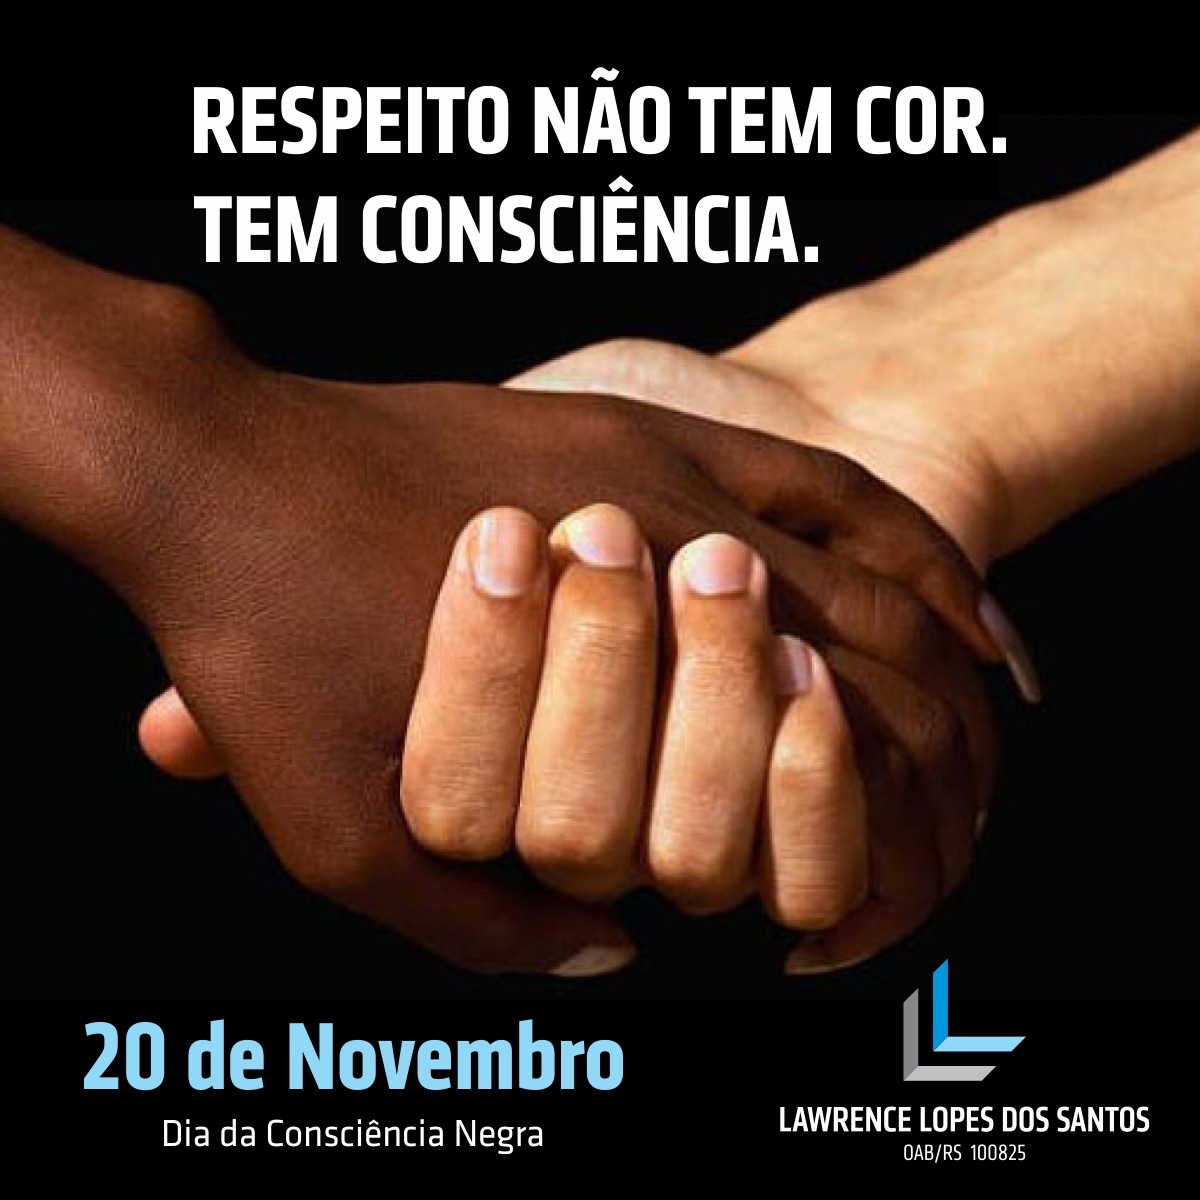 20 de novembro – Dia da Consciência Negra